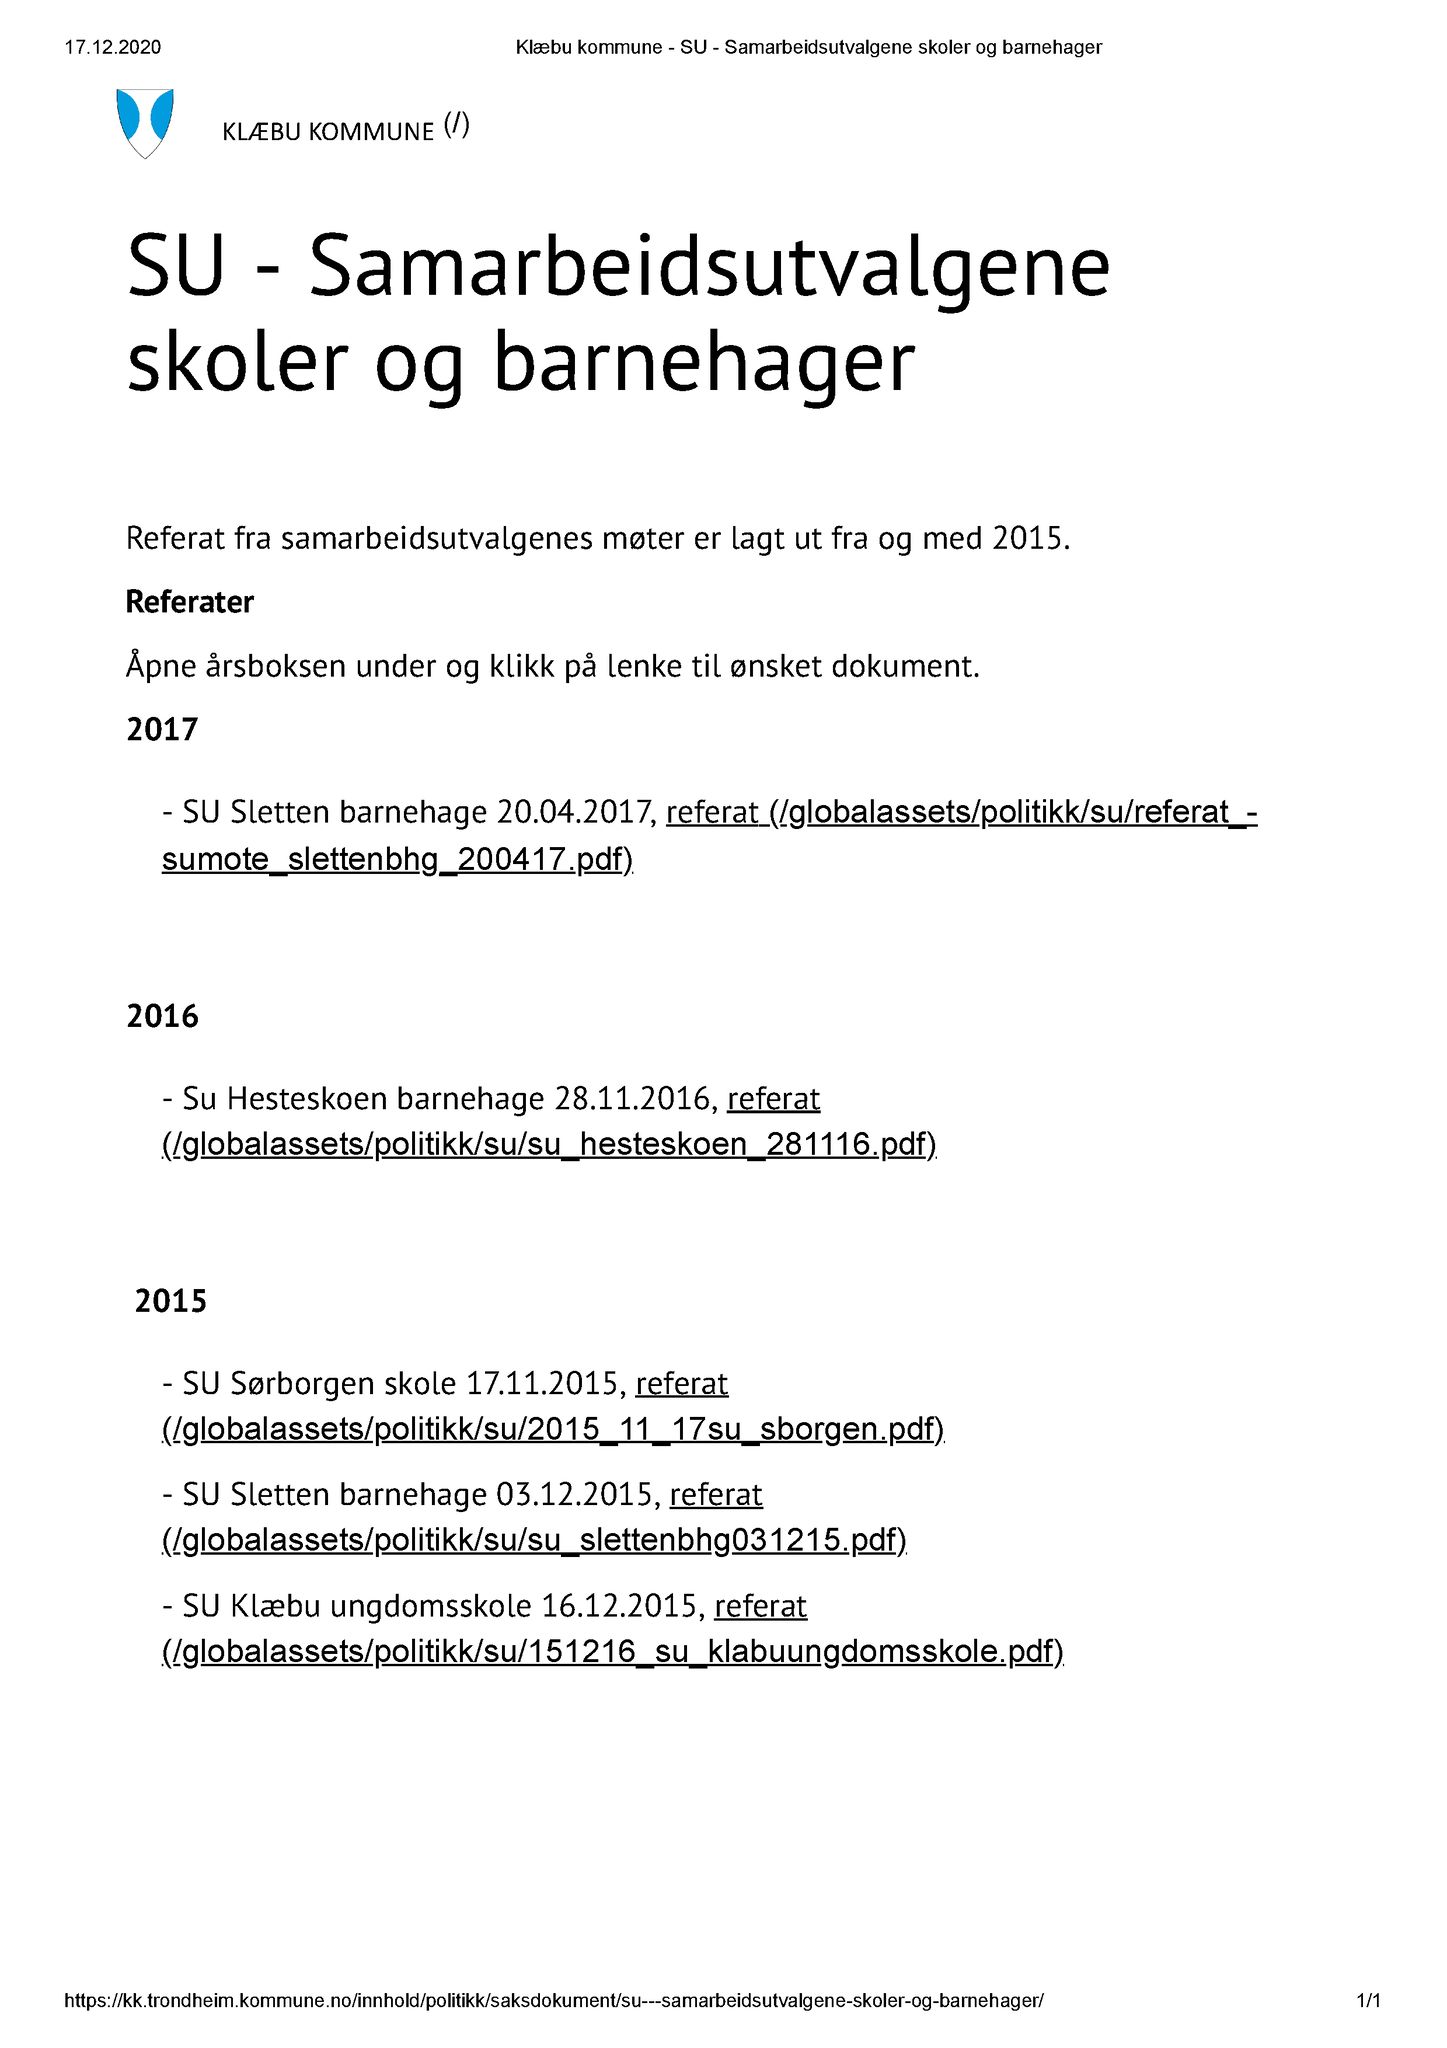 Klæbu Kommune, TRKO/KK/12-SU/L001: Samarbeidsutvalgene skoler og barnehager - Møteoversikt, 2015-2017, p. 1